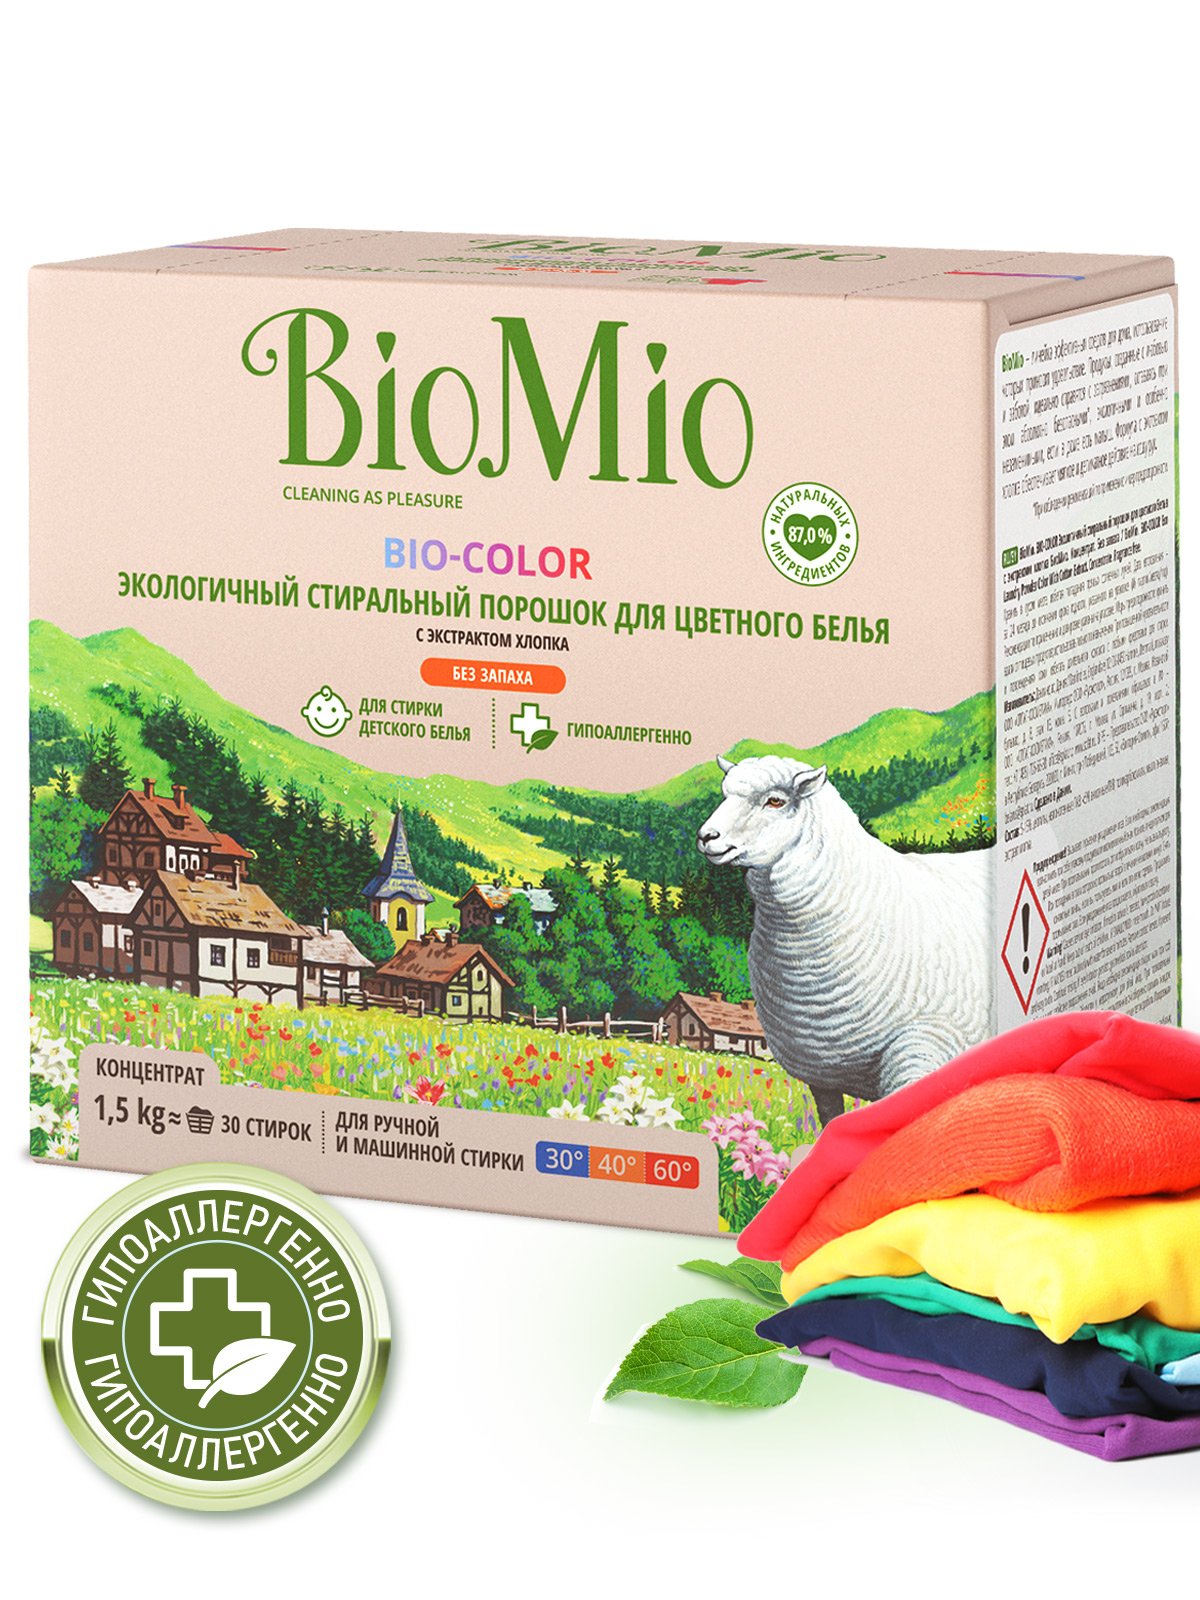 Стиральный порошок для цветного белья BioMio Bio-Color, концентрат, 1,5 кг - фото 2